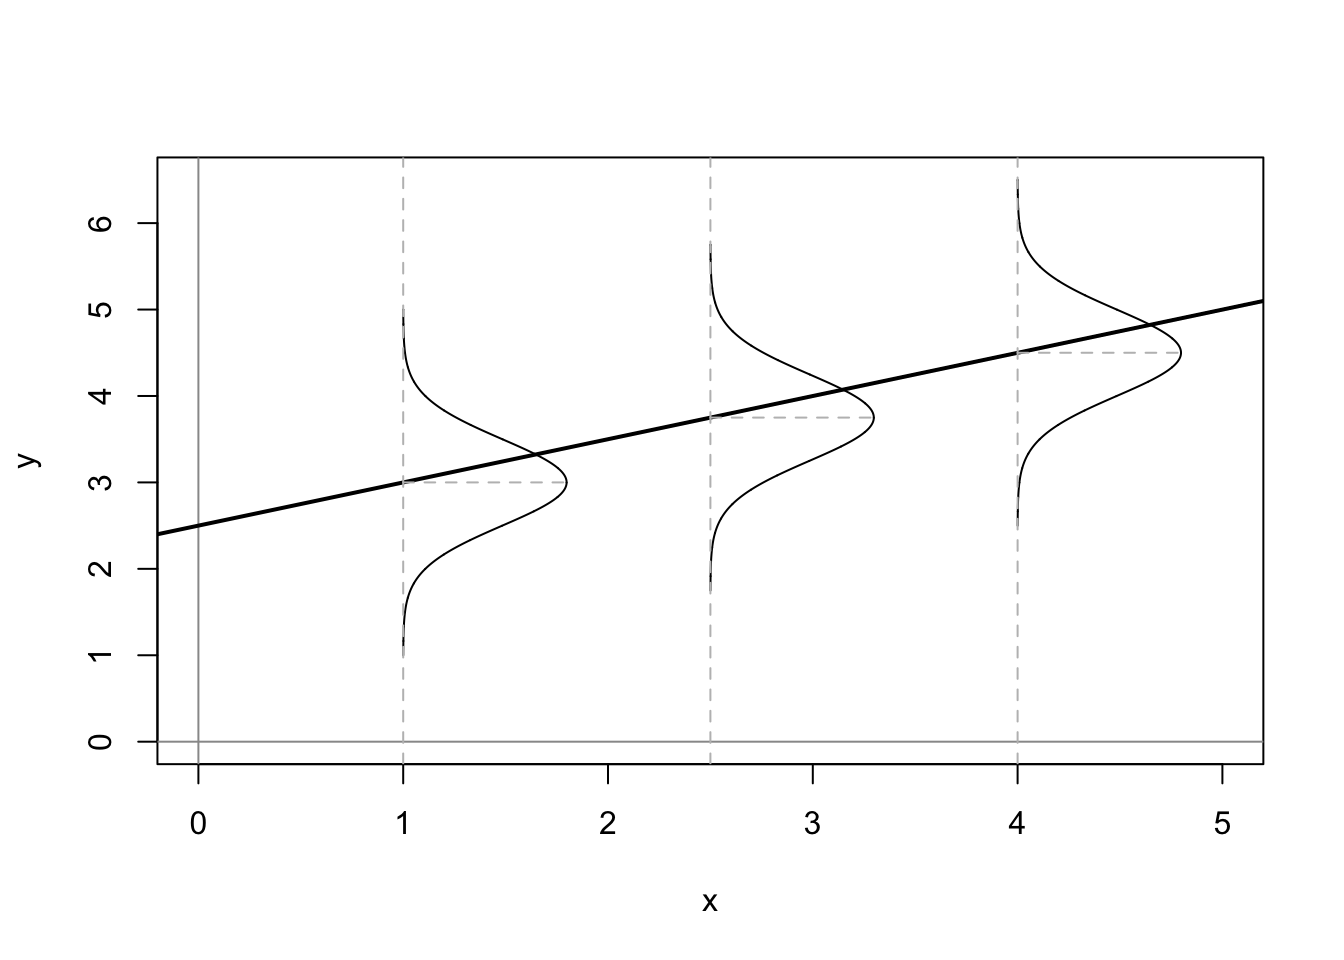 Stochastic Linear Model